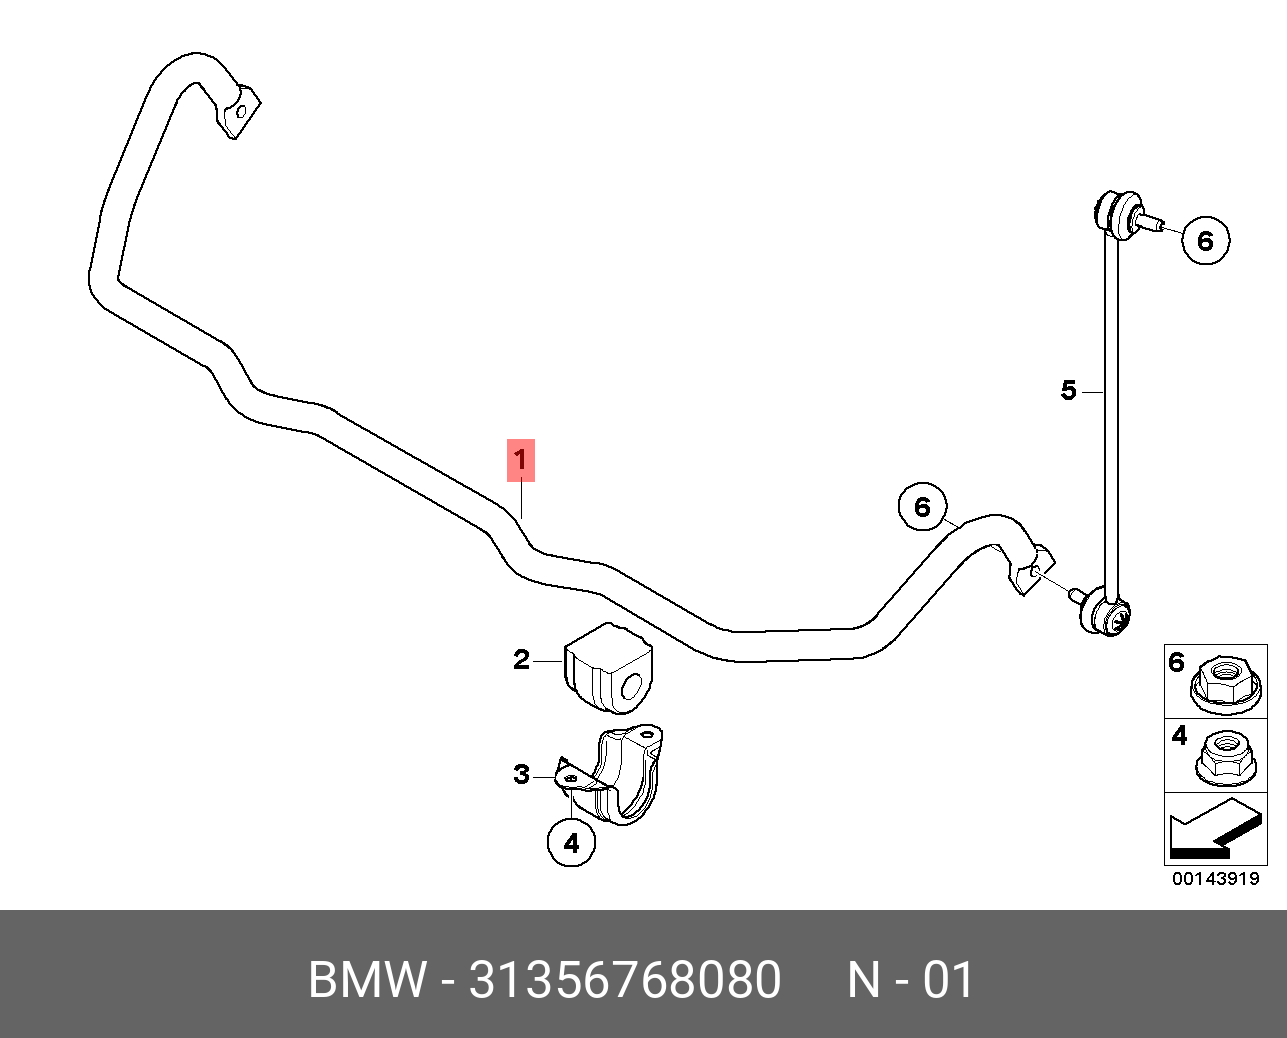 Стабилизатор передний - BMW 31 35 6 768 080